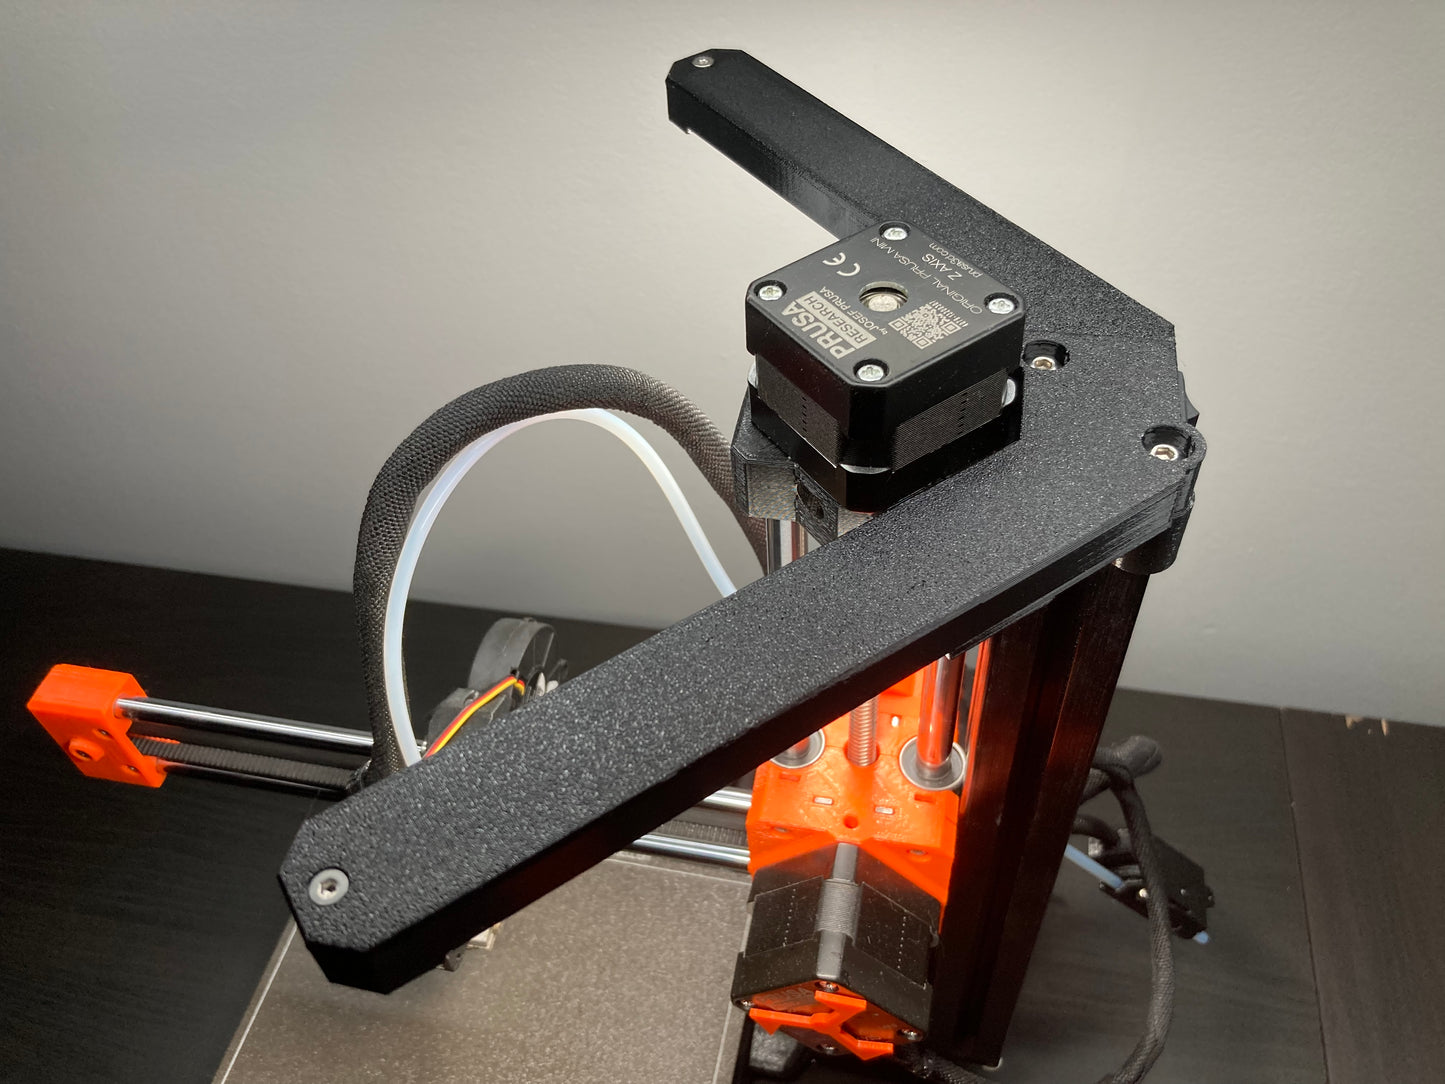 VOXEL Prusa Mini 3D Printer LED Light Bar